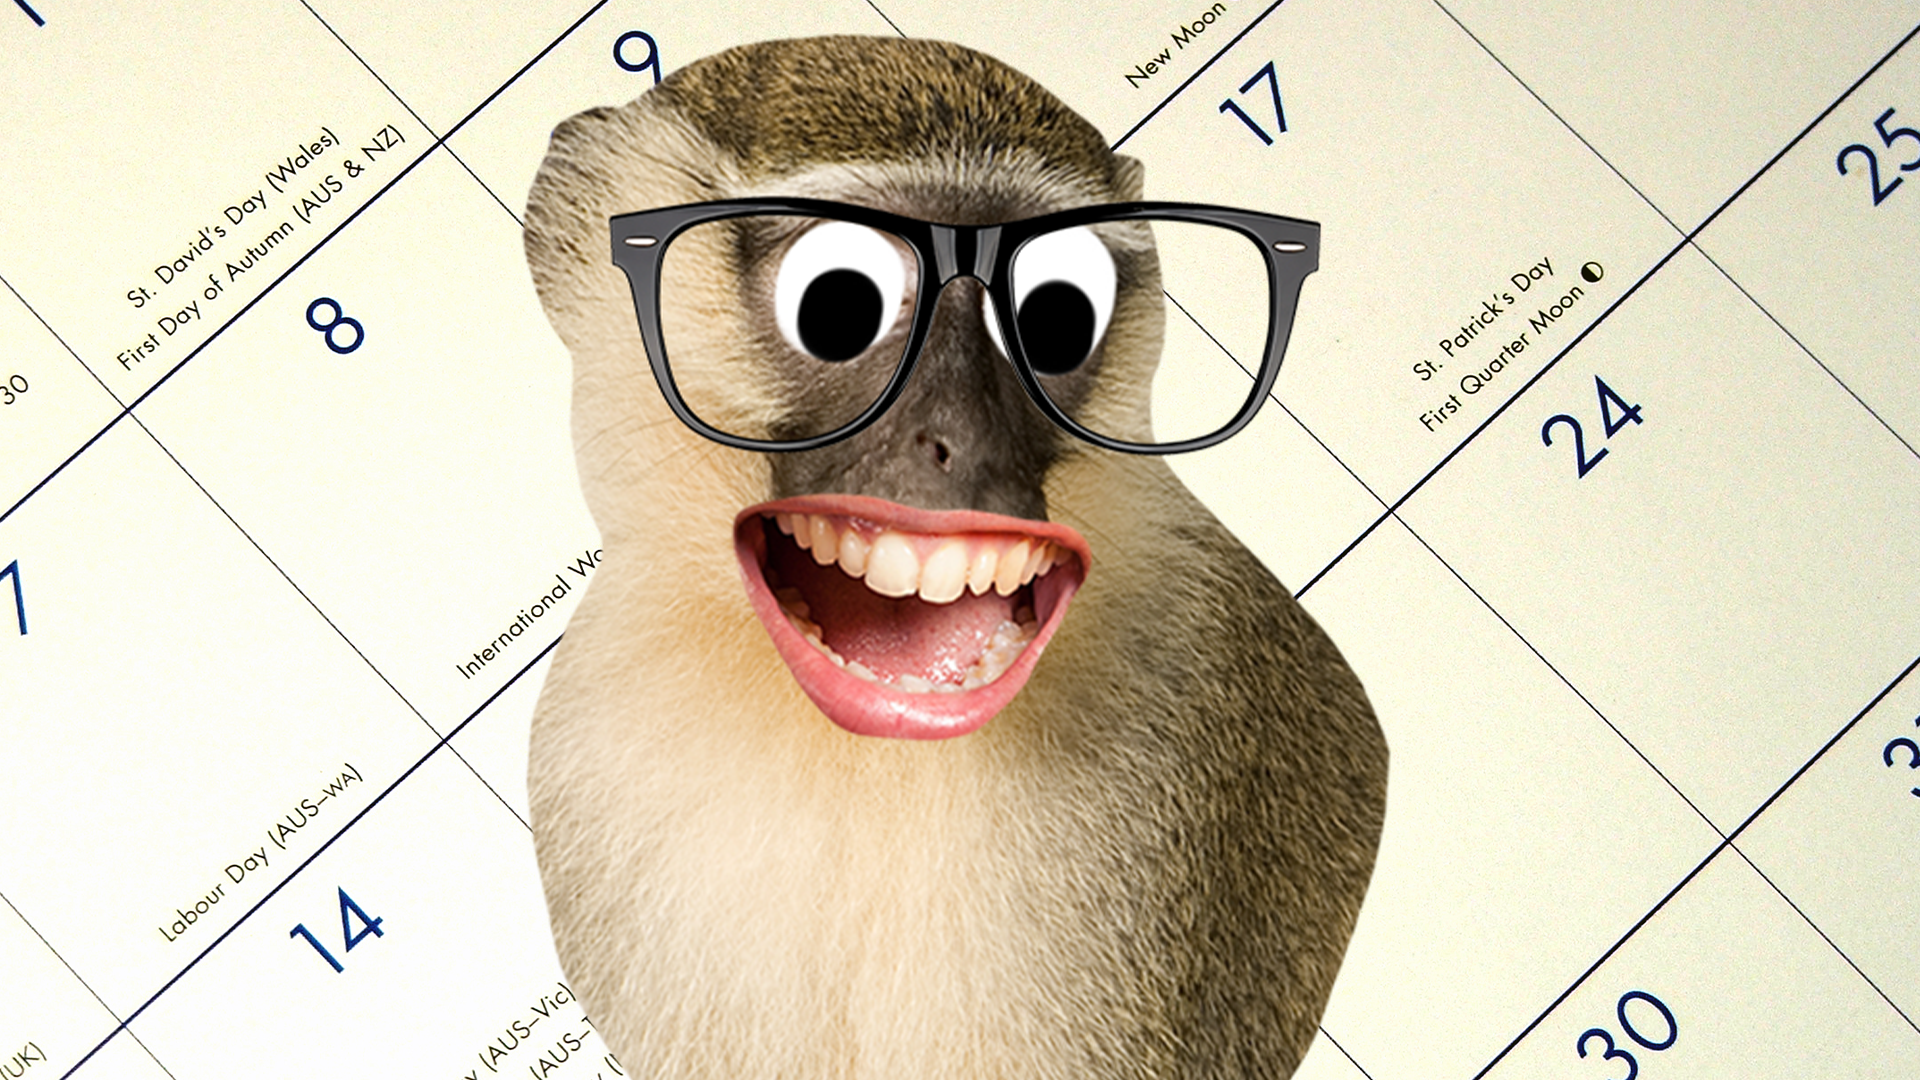 Goofy monkey in front of calendar 